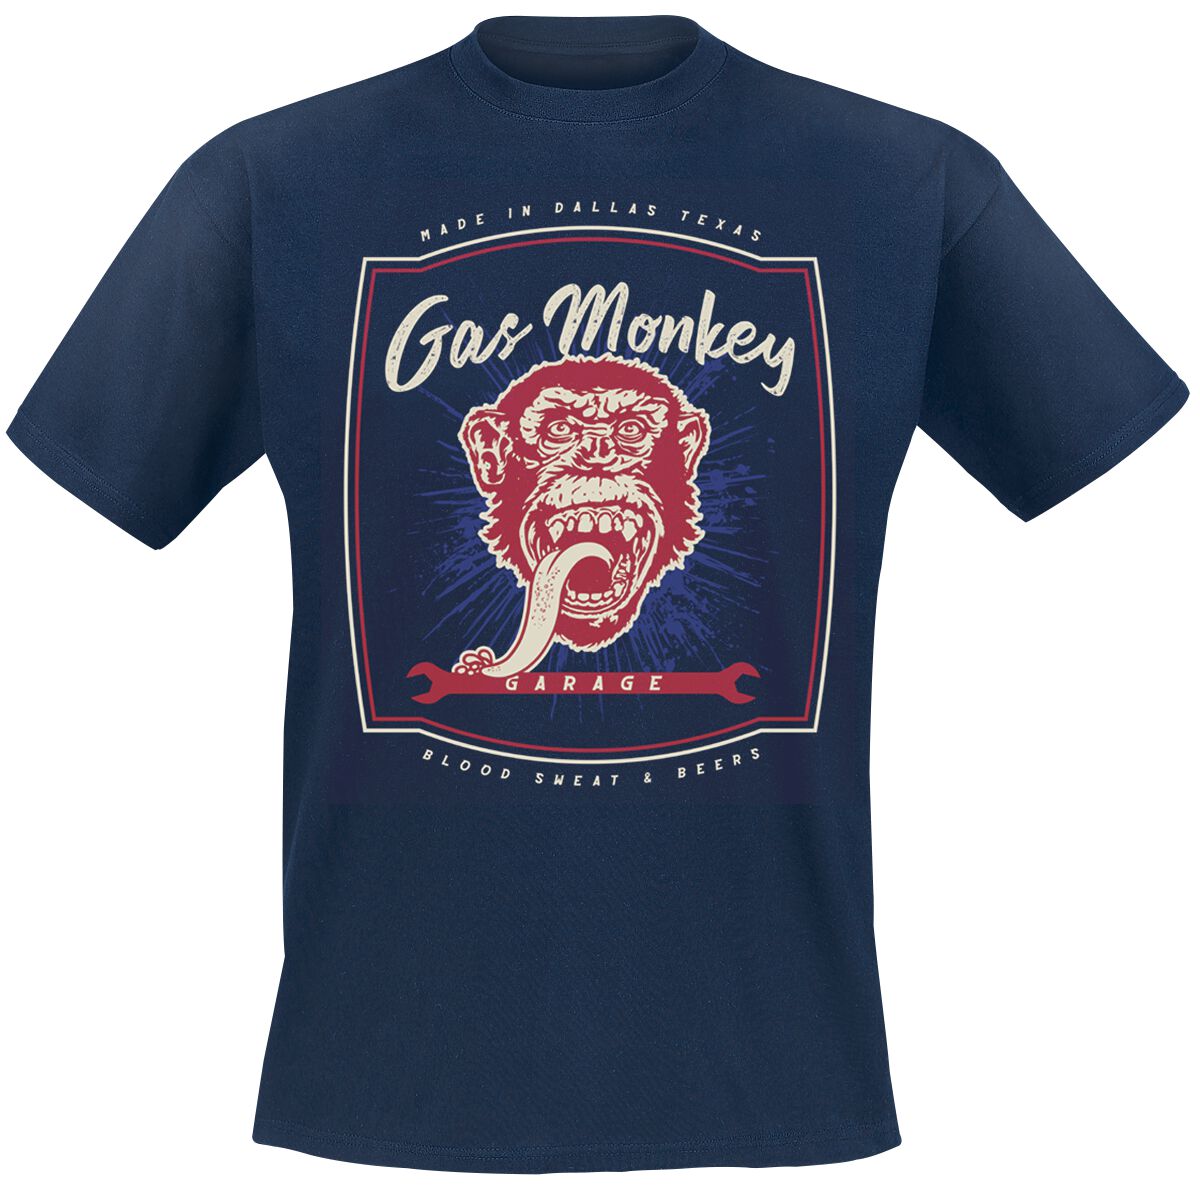 Gas Monkey Garage T-Shirt - Made In Dallas - S bis M - für Männer - Größe S - navy  - Lizenzierter Fanartikel